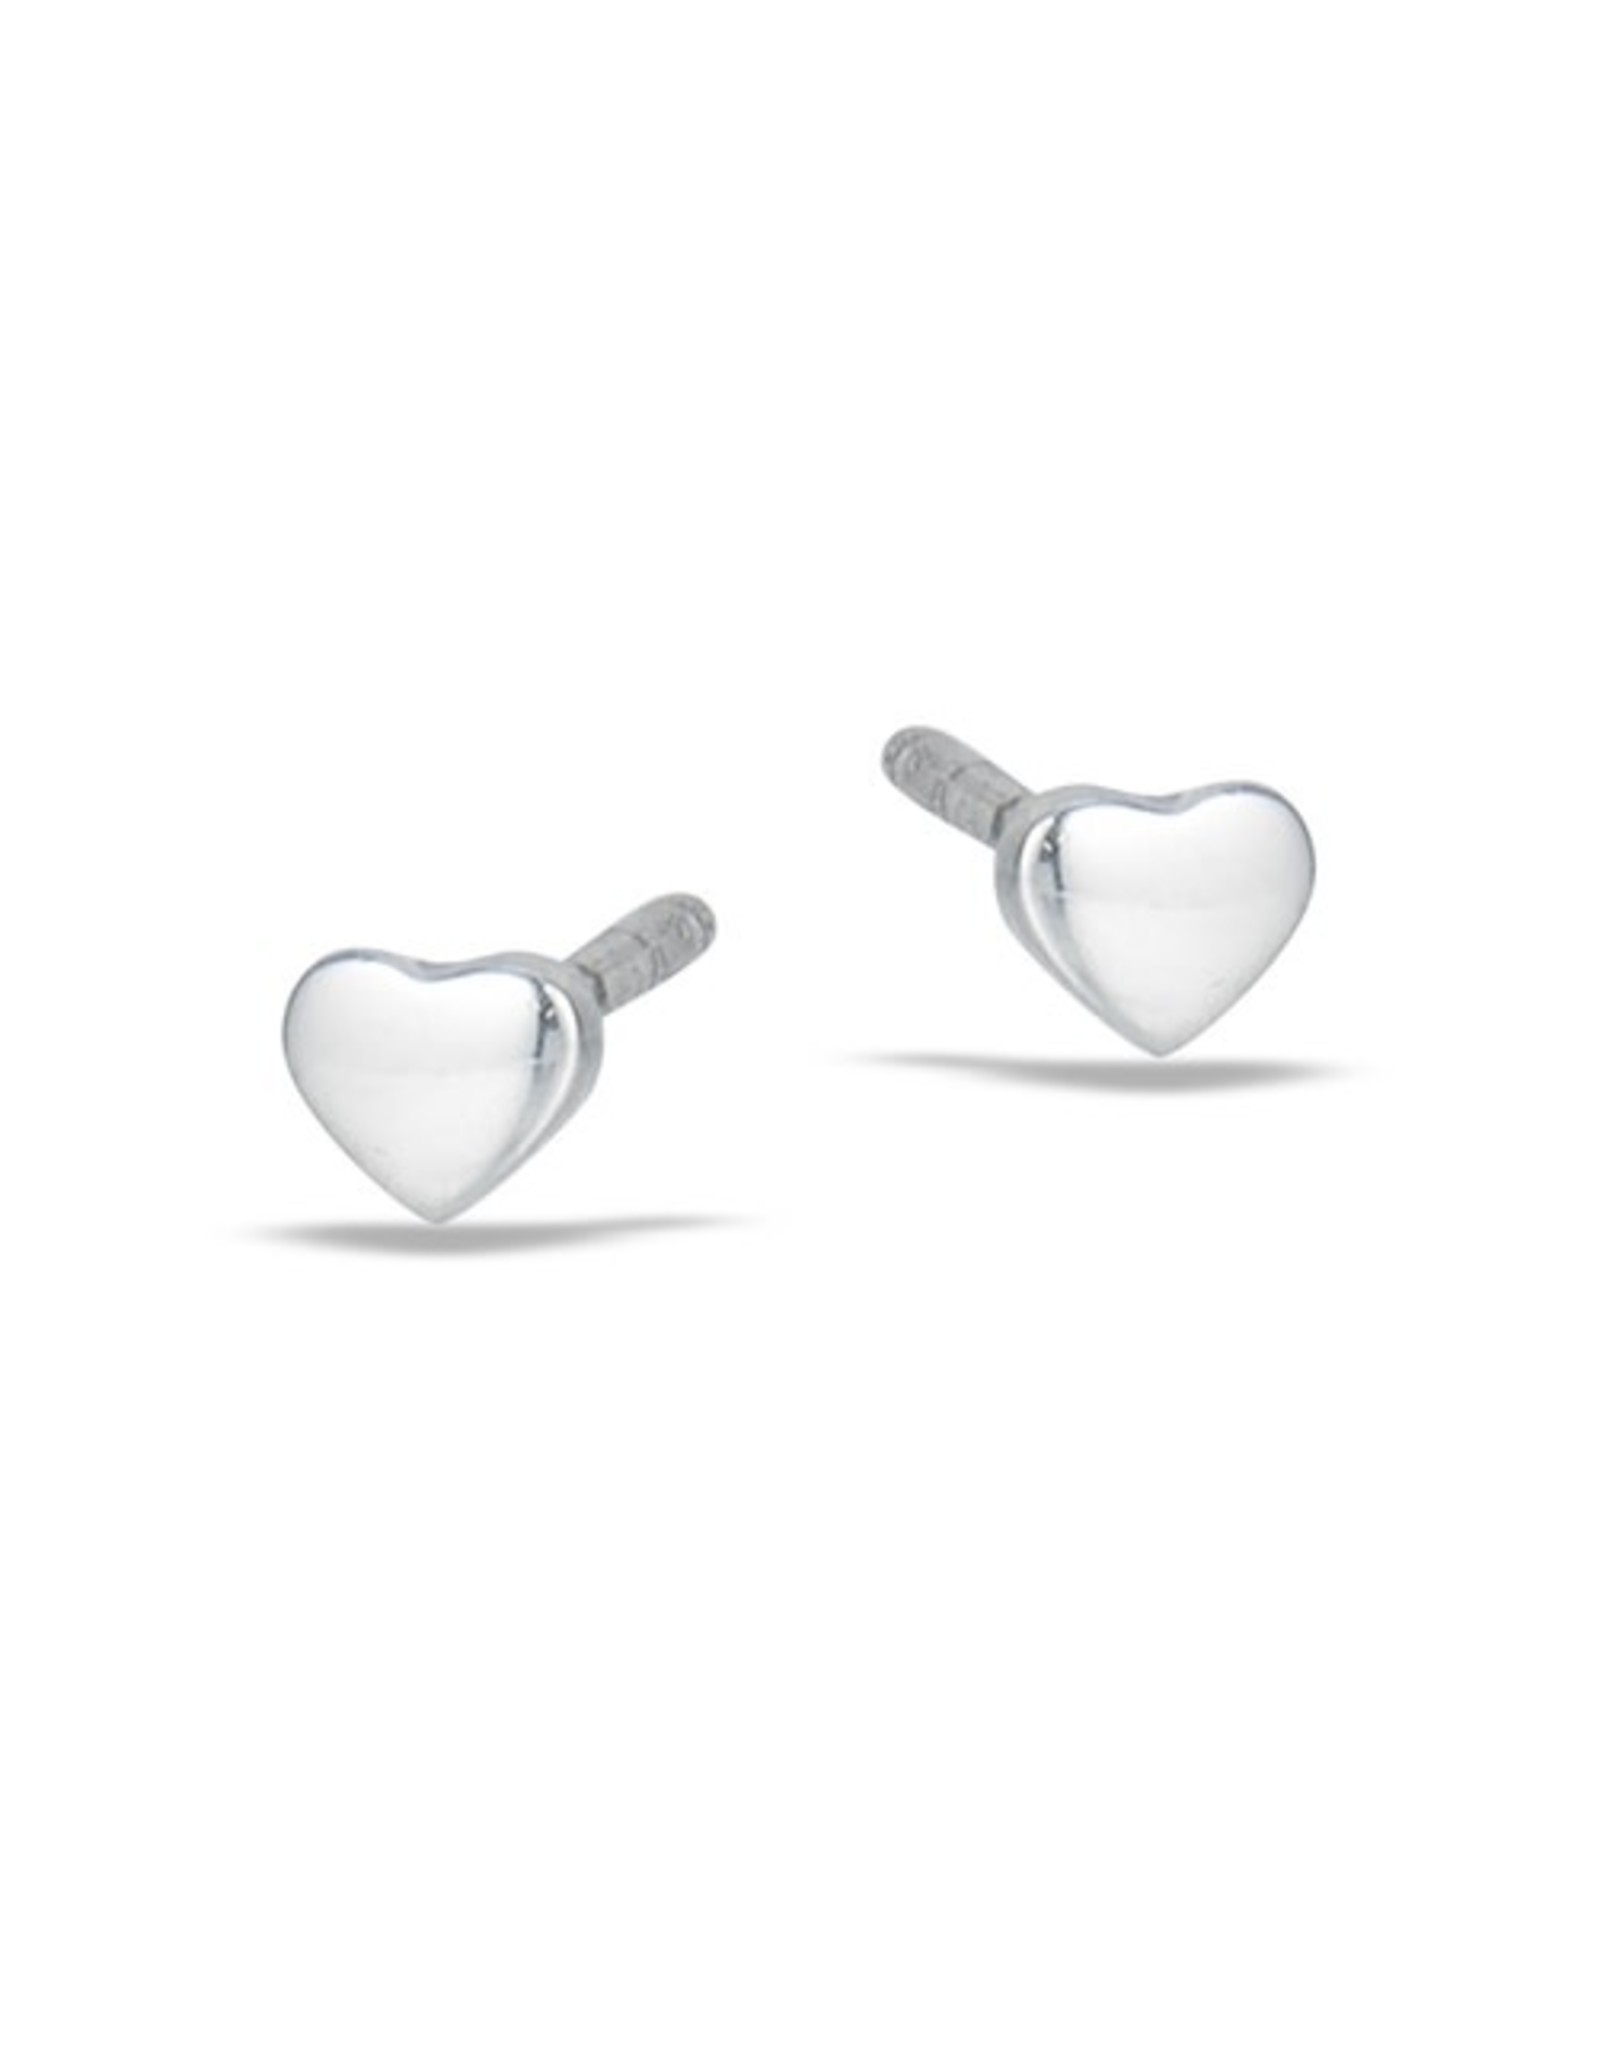 Welman S/S Small Heart Post Earring